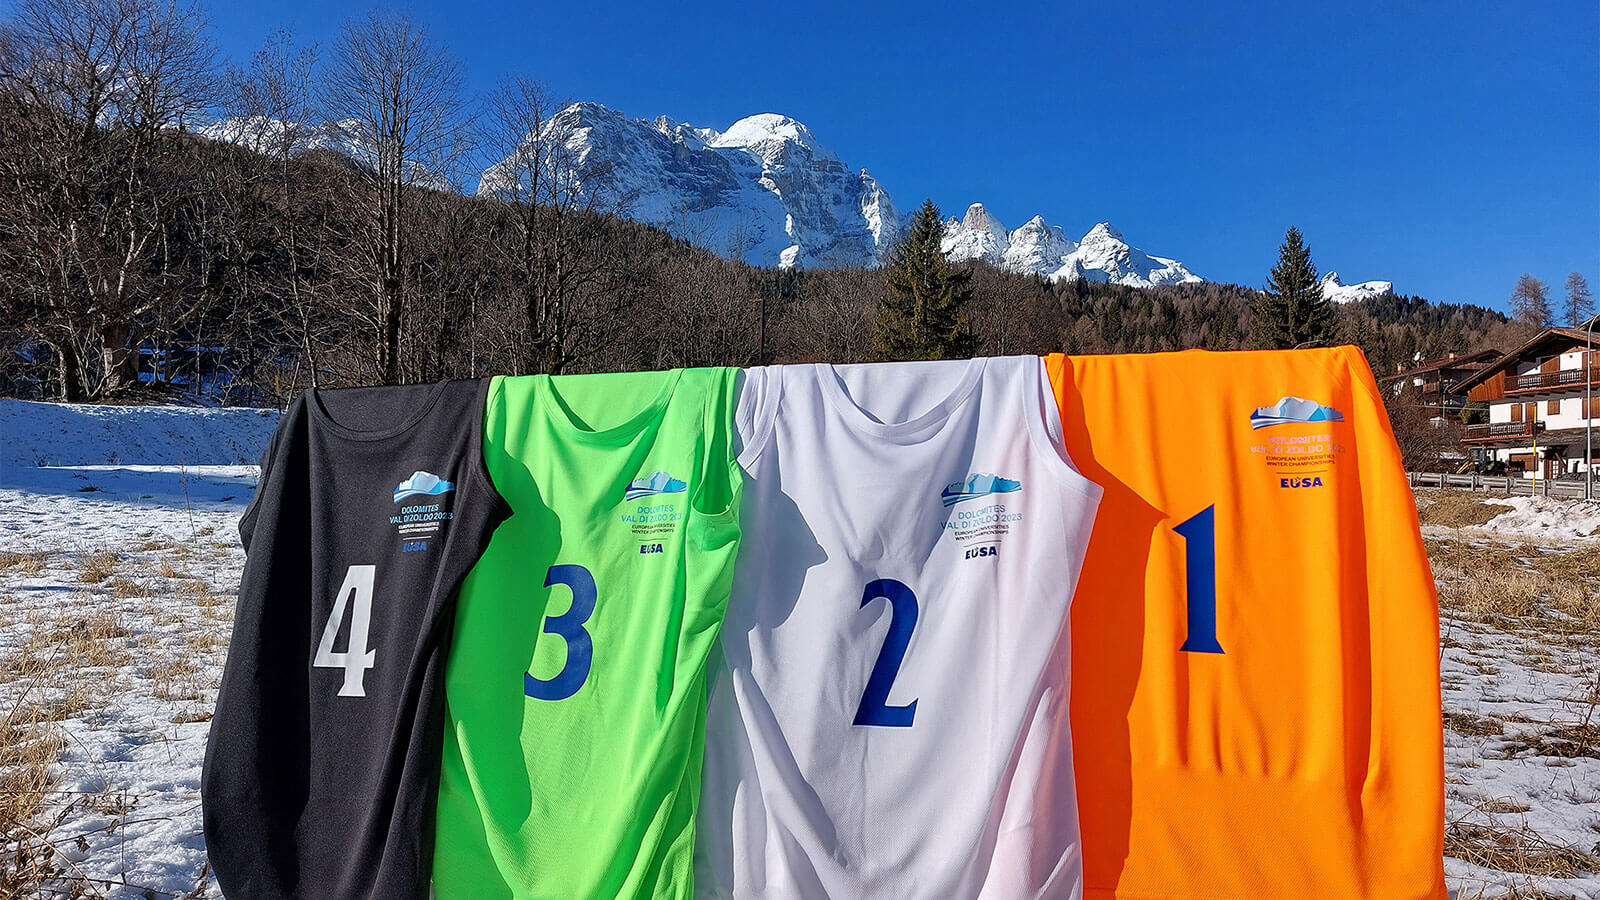 EUSA Avrupa Üniversiteler Kış Şampiyonası’nda Kar Voleybolu Heyecanı